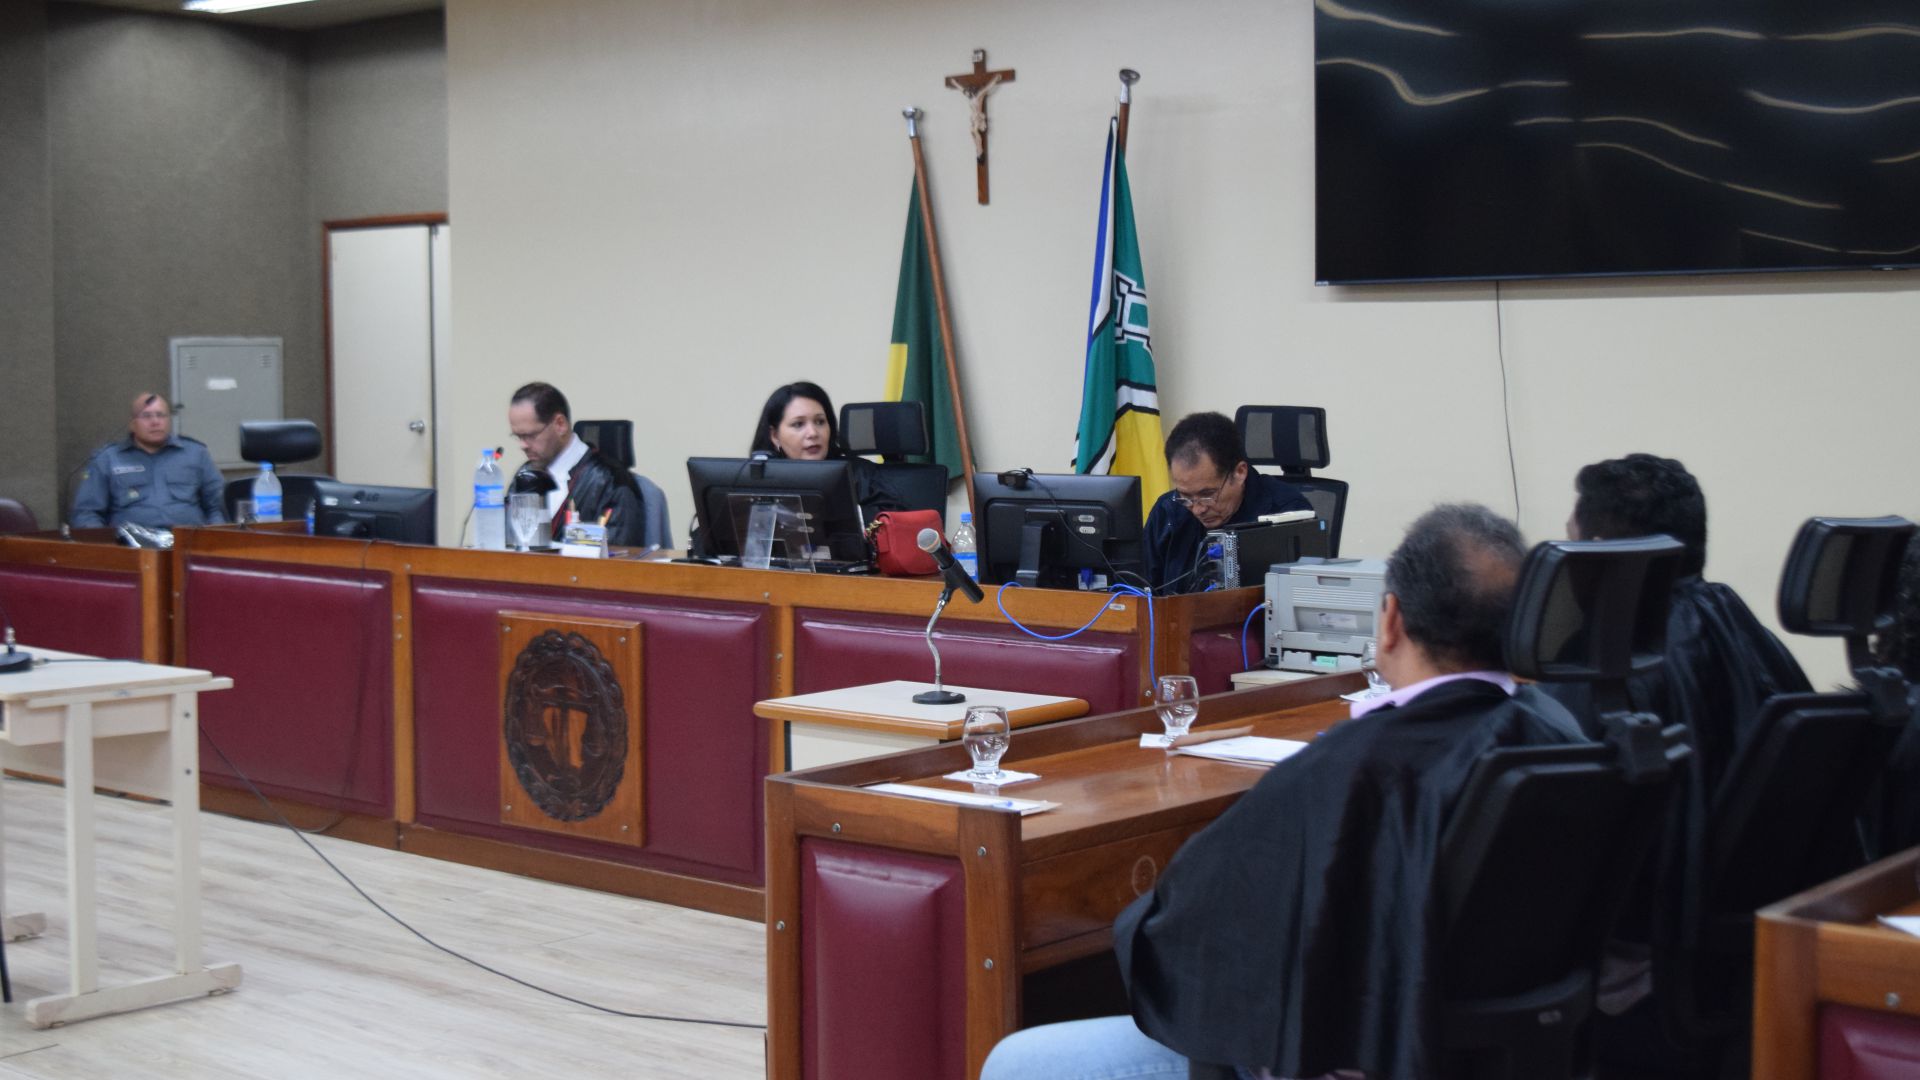 Na imagem, pessoas sentadas participando de julgamento, sendo uma delas a juíza Livia Freitas no fórum de Macapá